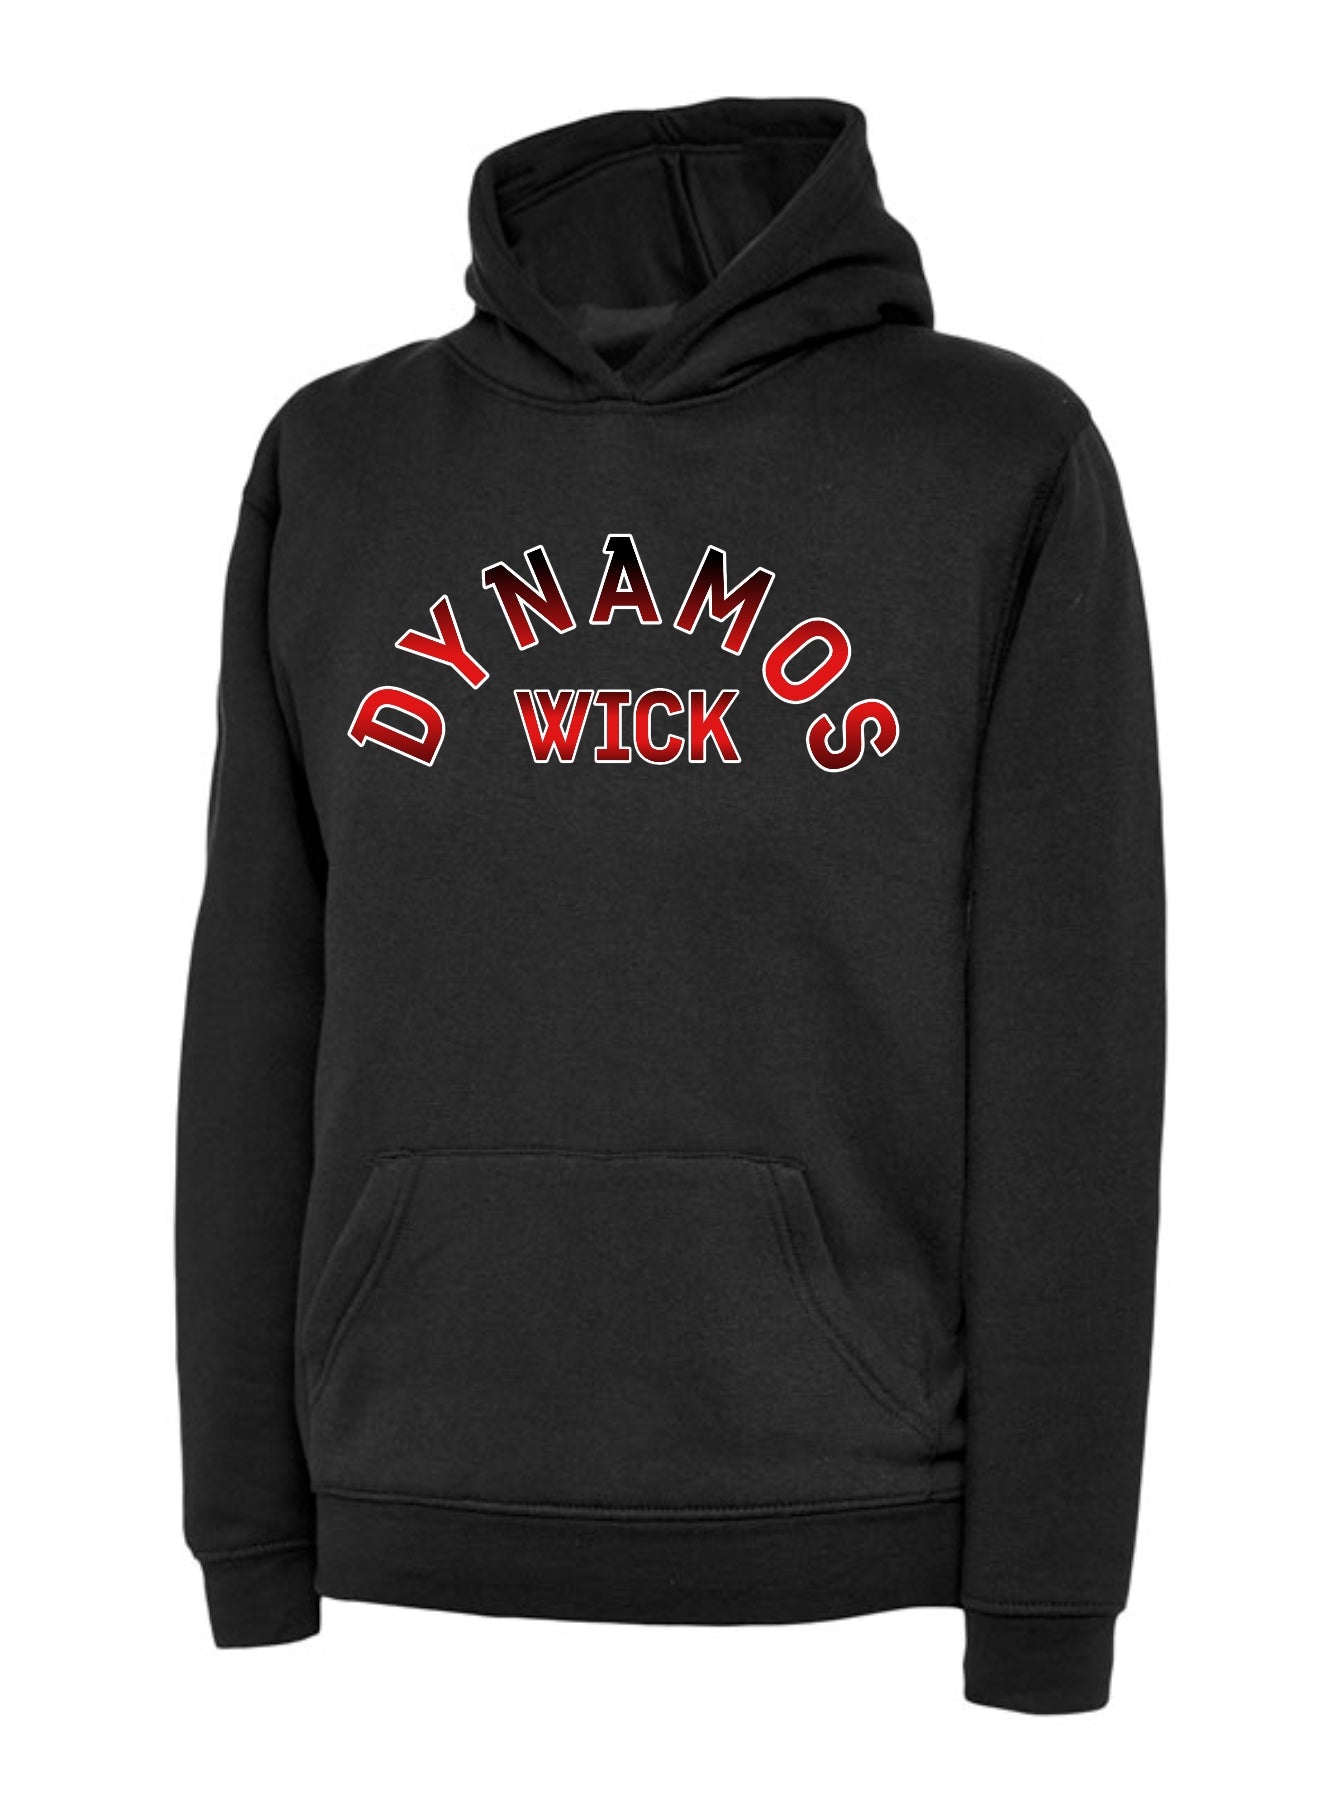 Wick Dynamos Adult Hoodie - Various designs